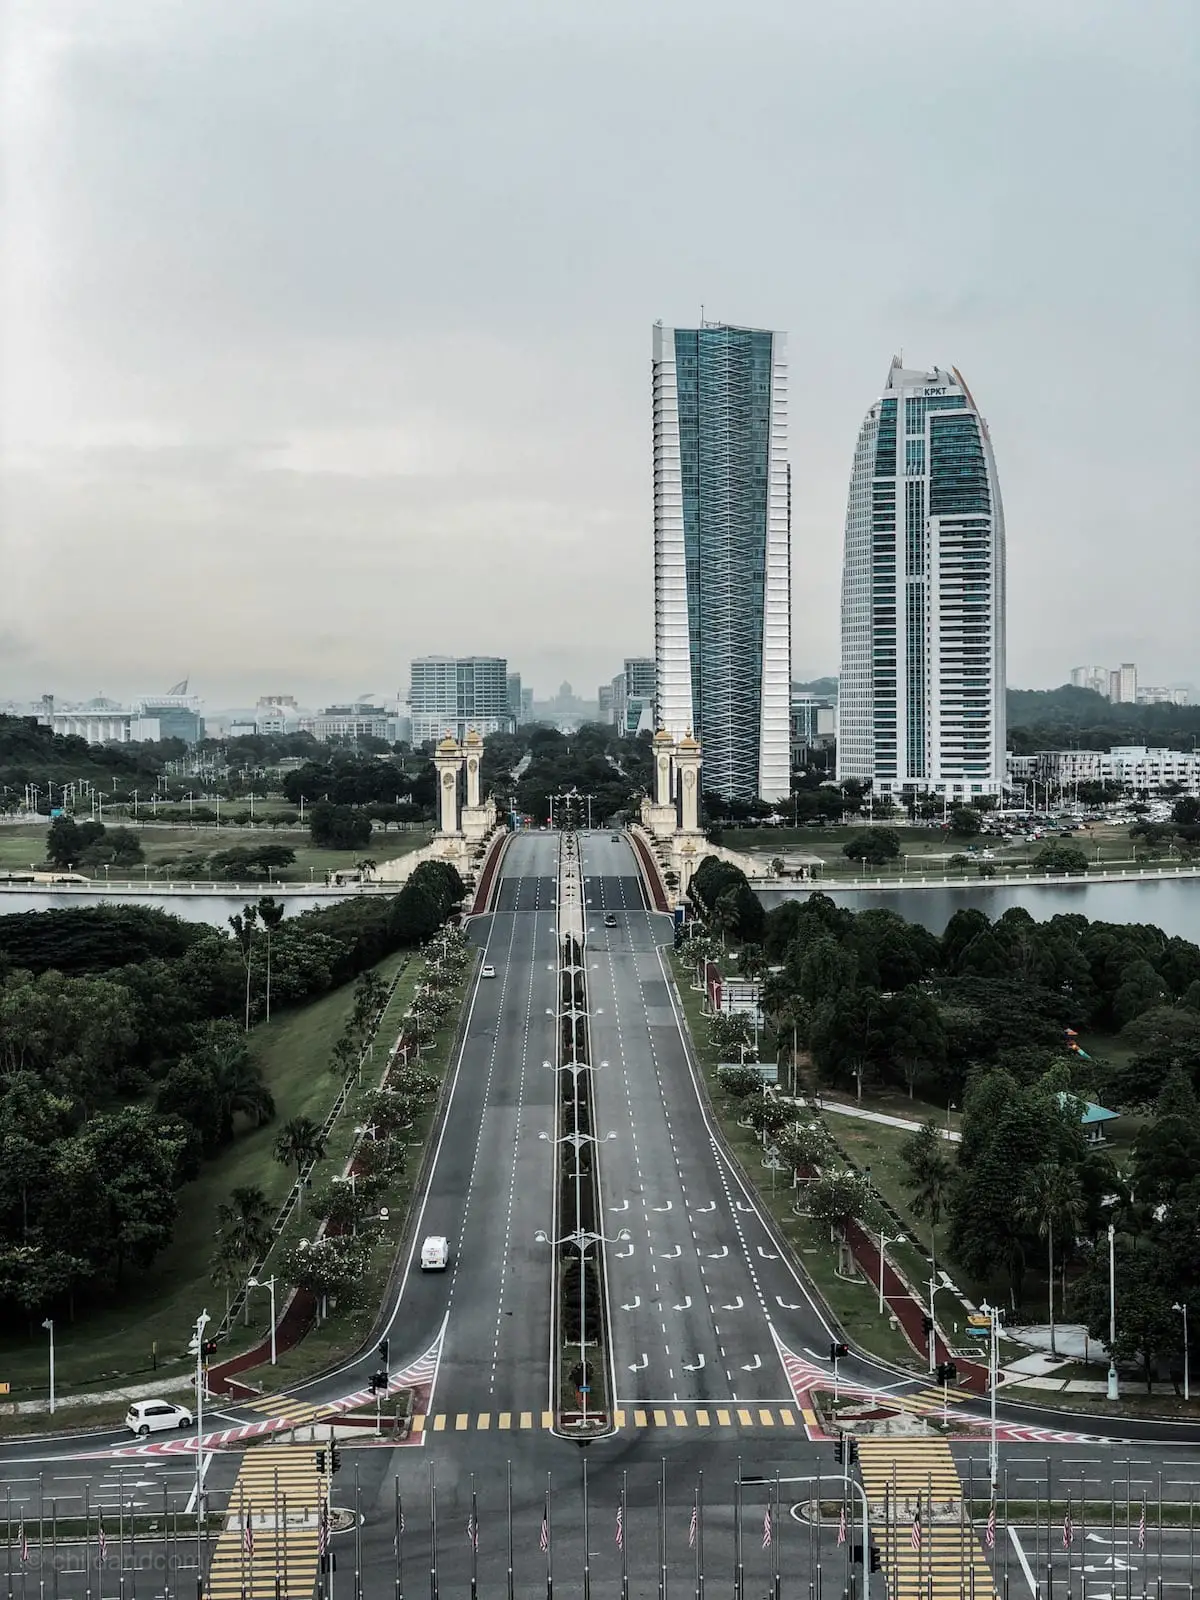 Lohnt sich ein Besuch in Putrajaya? Putrajaya Sehenswürdigkeiten, Kuala Lumpur Tagesausflug, Reisebericht Putrajaya